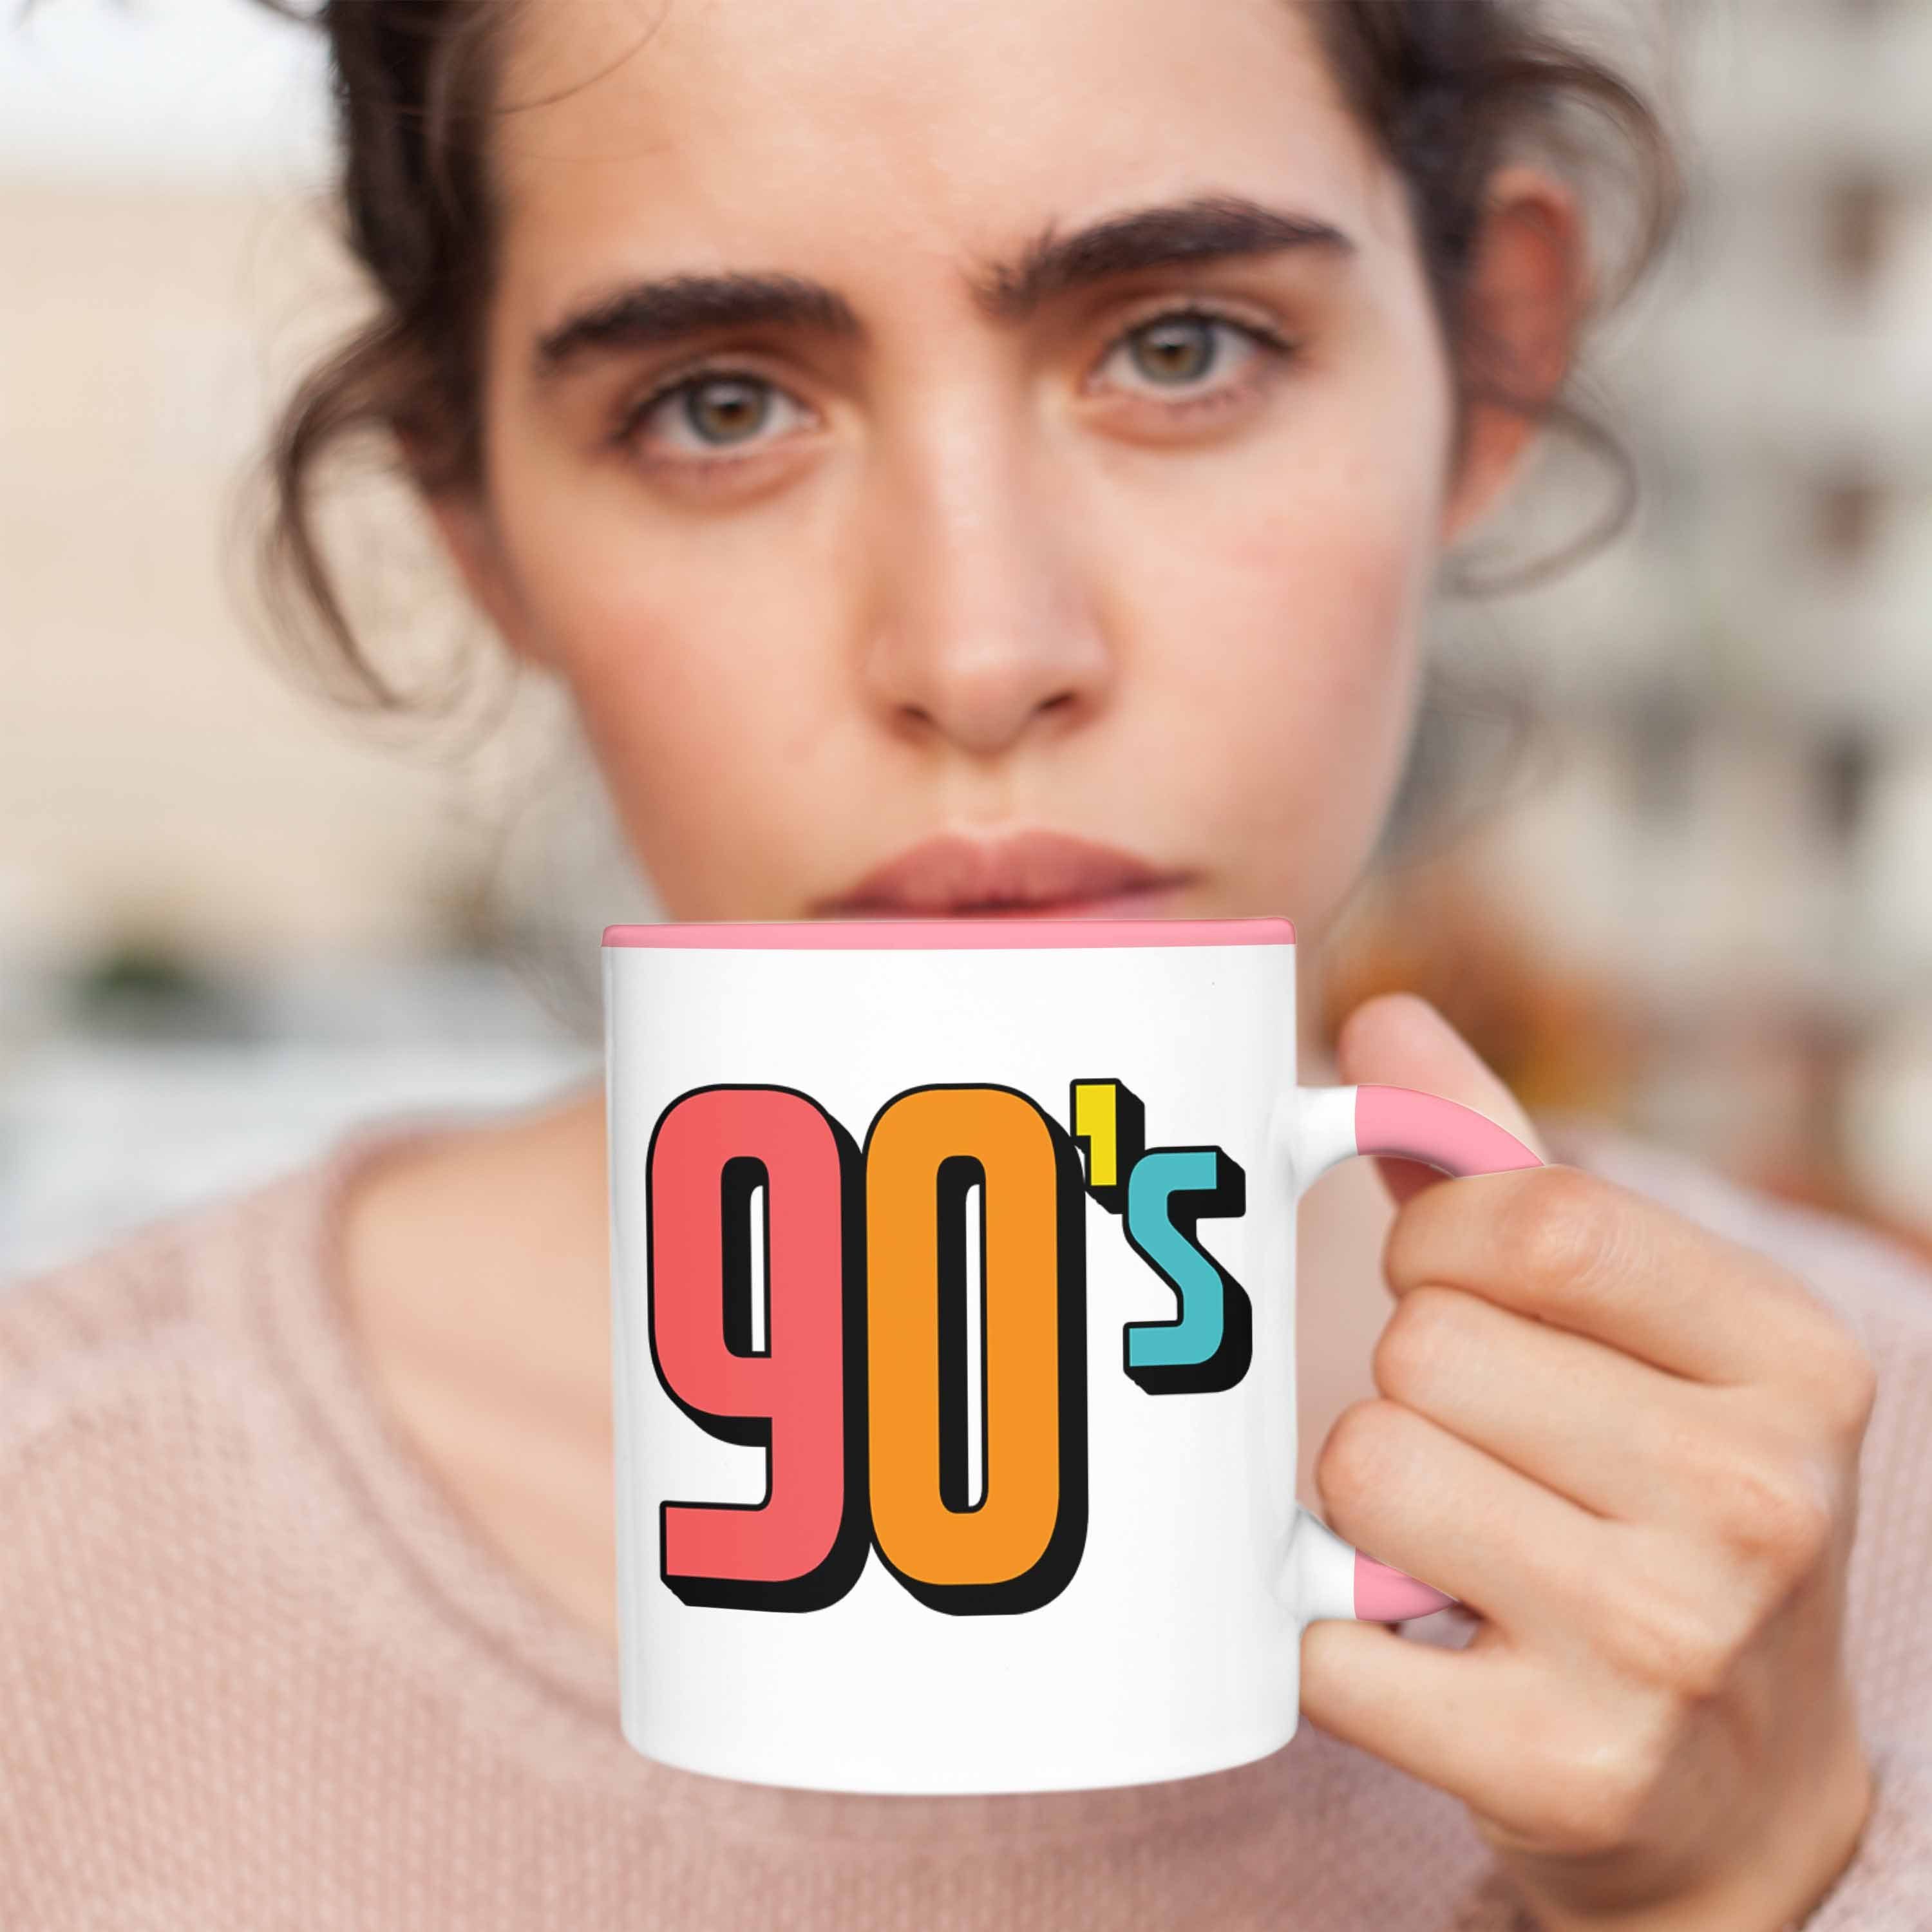 Rosa Geschenk 90er Tasse "90's" Tasse Retro - Nostalgiker für Trendation Jahre